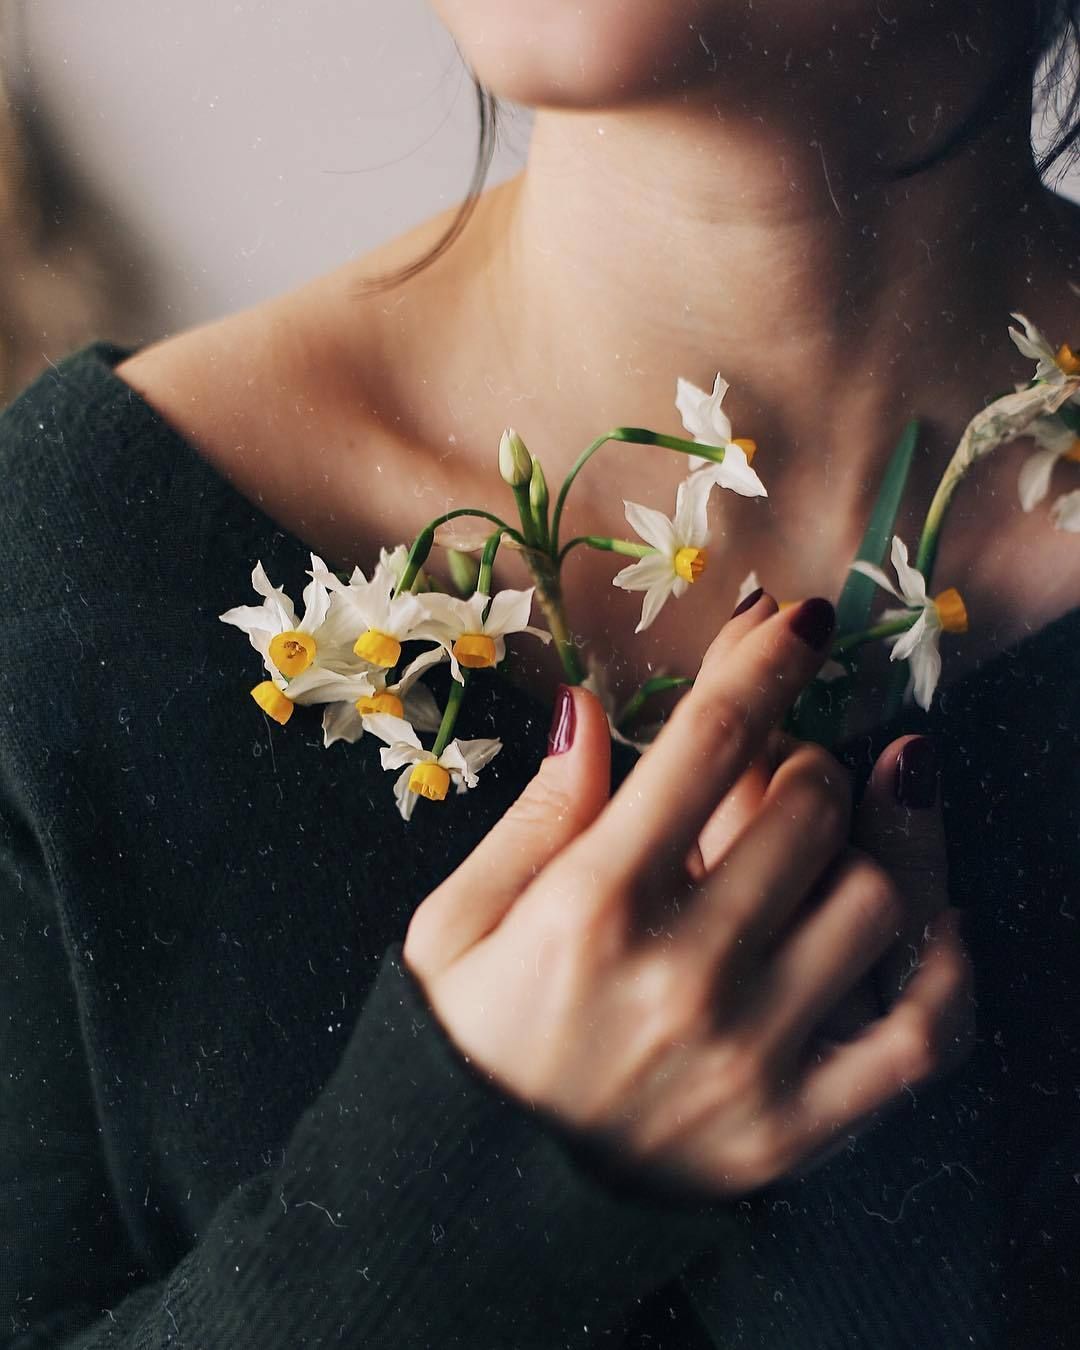 Красивые фото с цветами в руках девушки